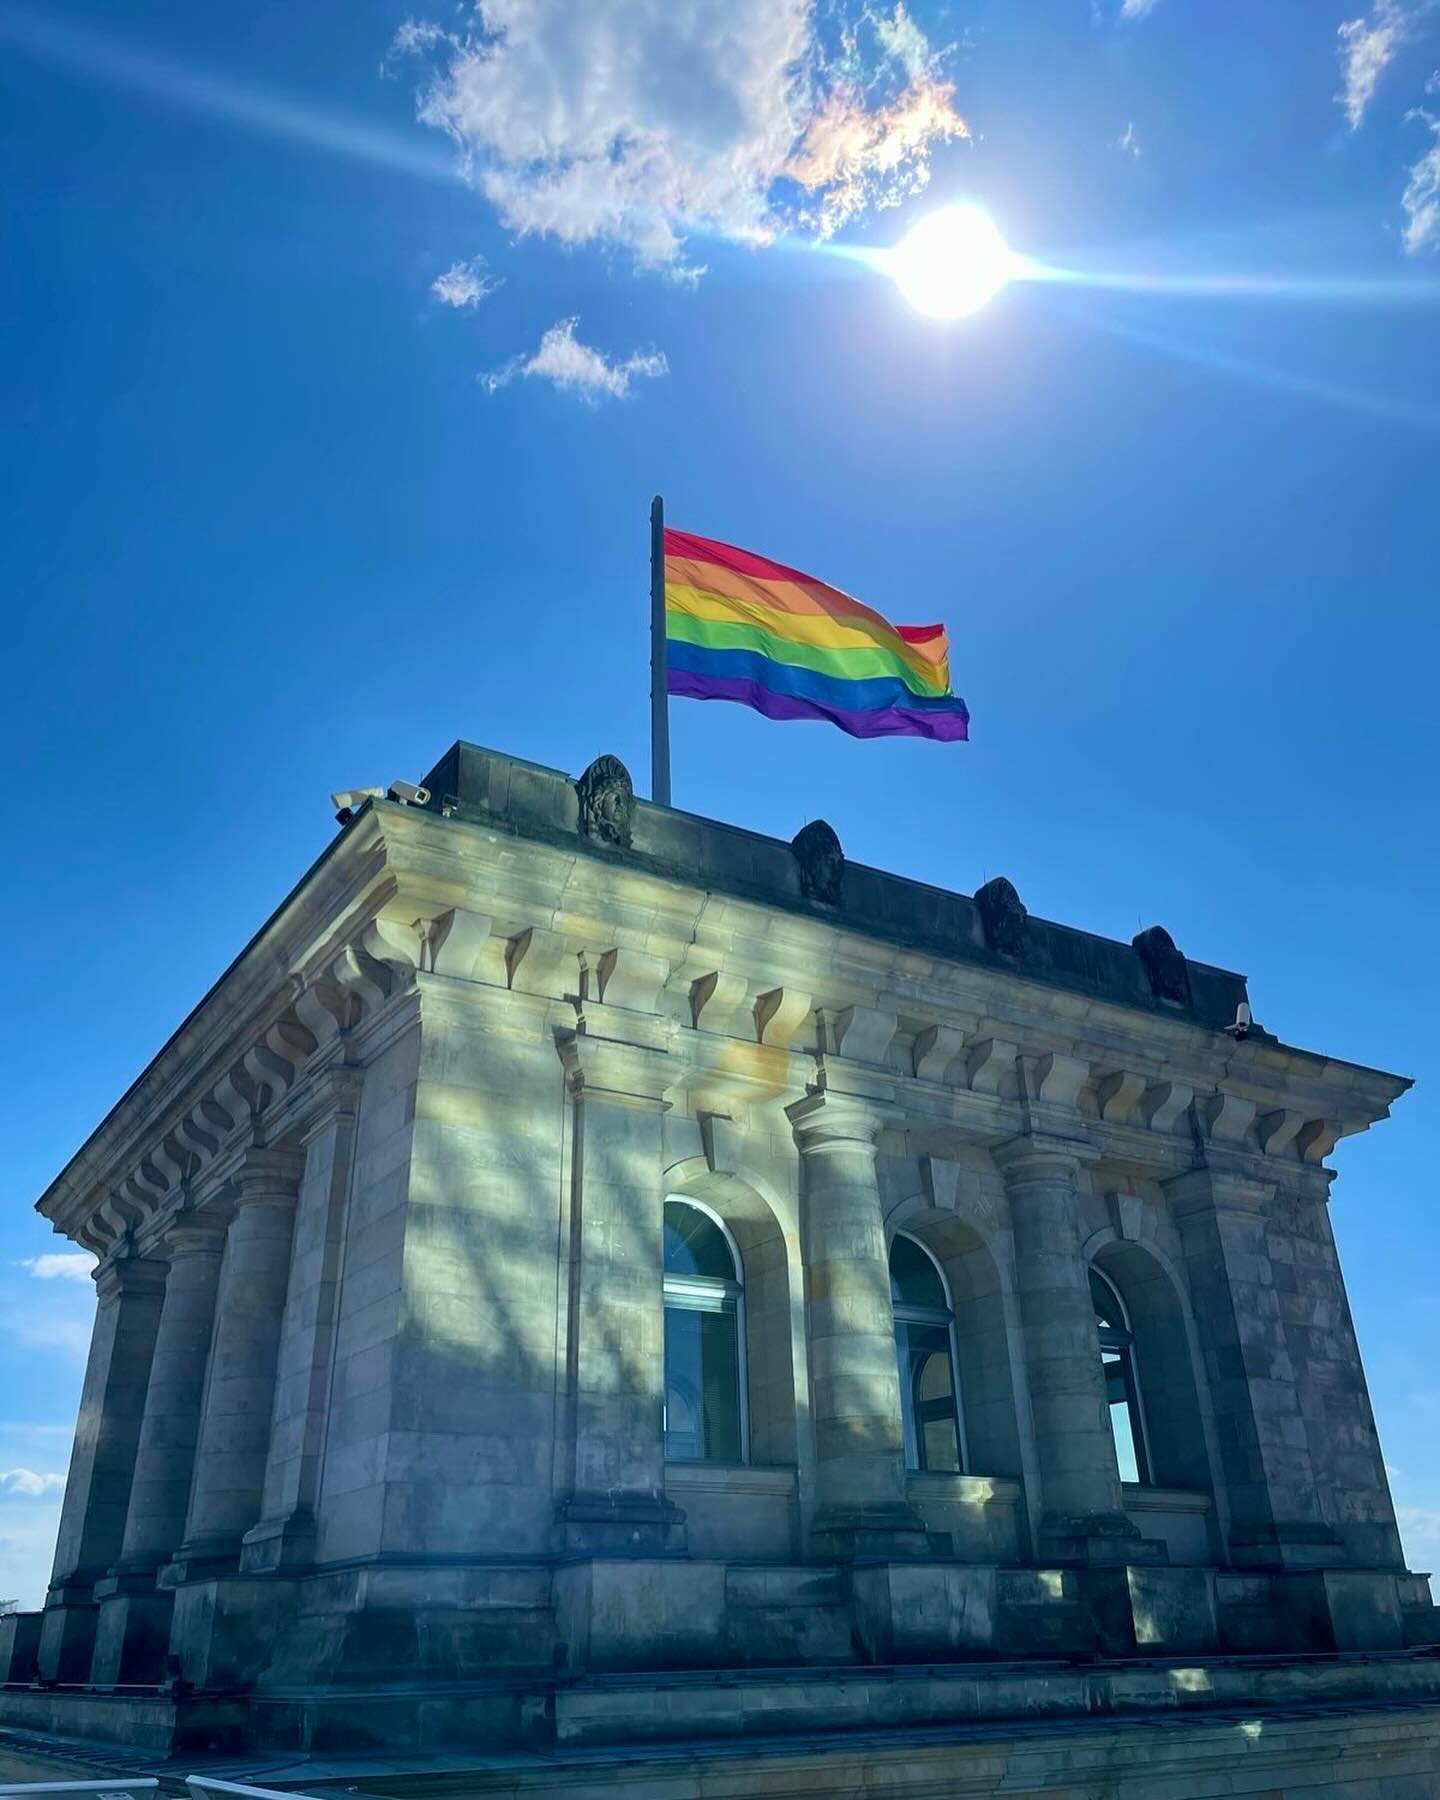 Licht und Schatten.

Heute am 17. Mai ist #idahobit -der Internationale Aktionstag gegen Homo,-Bi, Inter,- und Transphobie. 

Wir haben in Deutschland endlich das diskriminierende #Transsexuellengesetz abgeschafft und durch das #Selbstbestimmungsgese